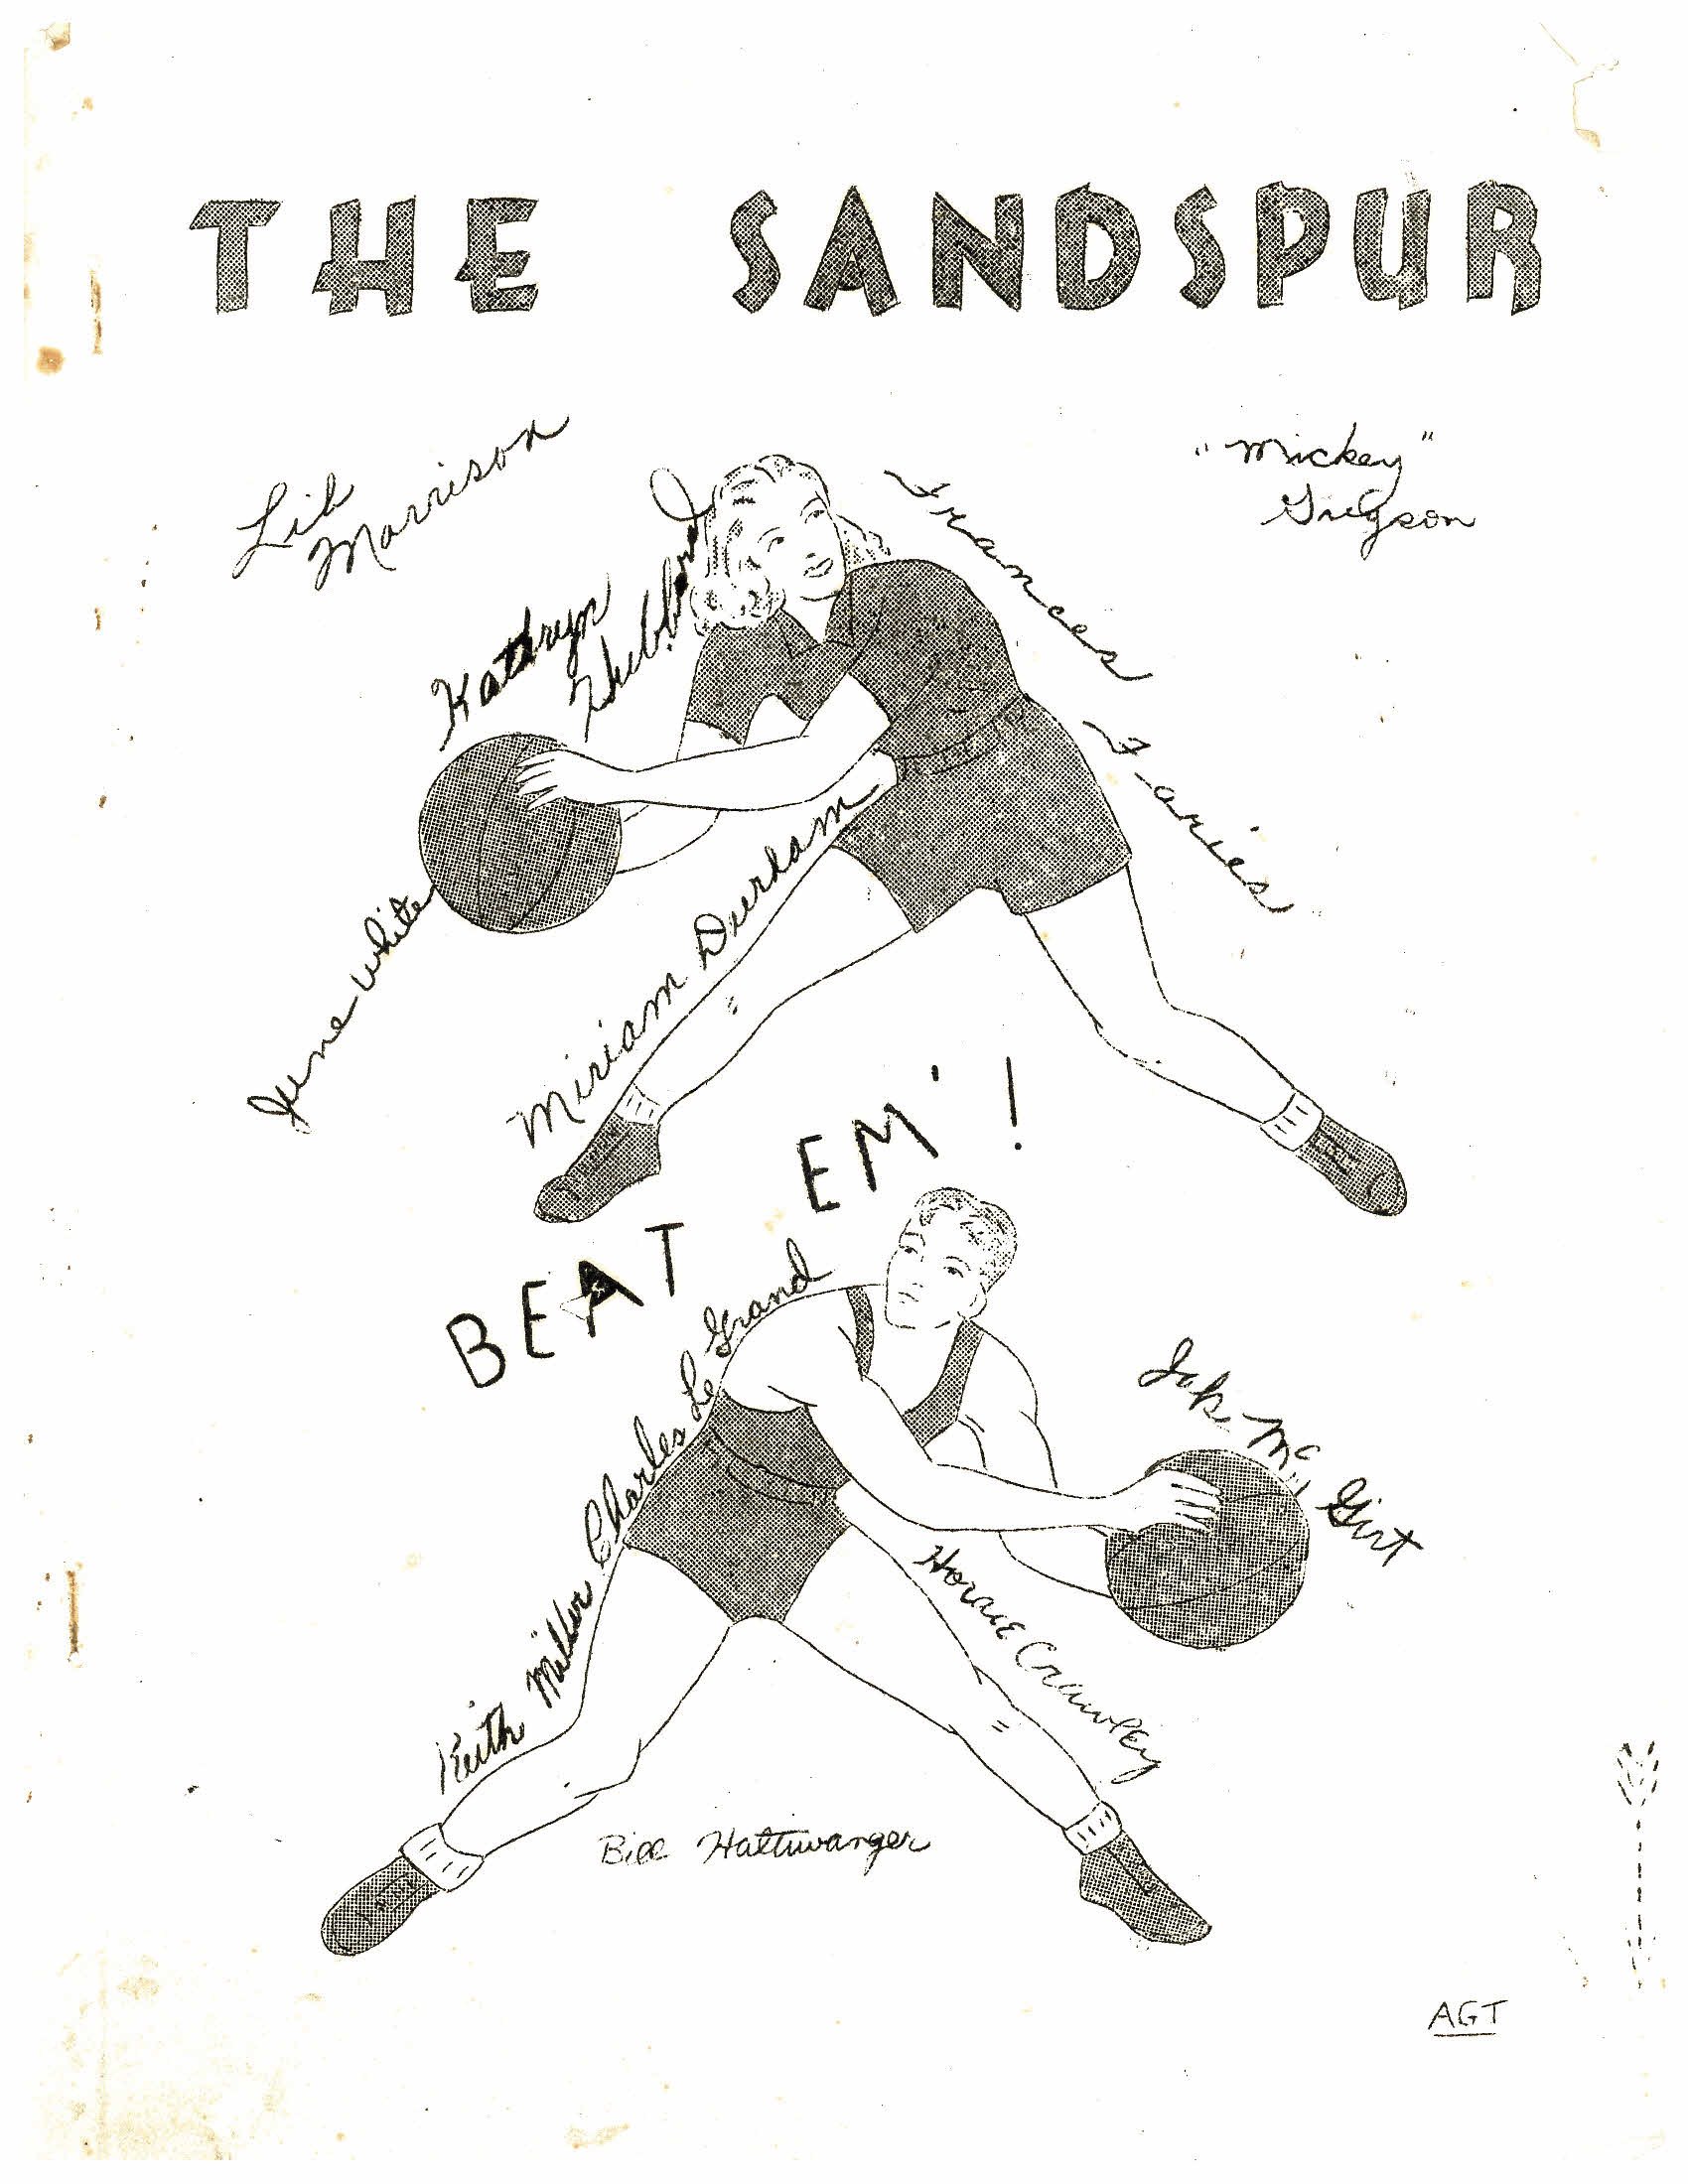 Sandspur February 28, 1945.jpg